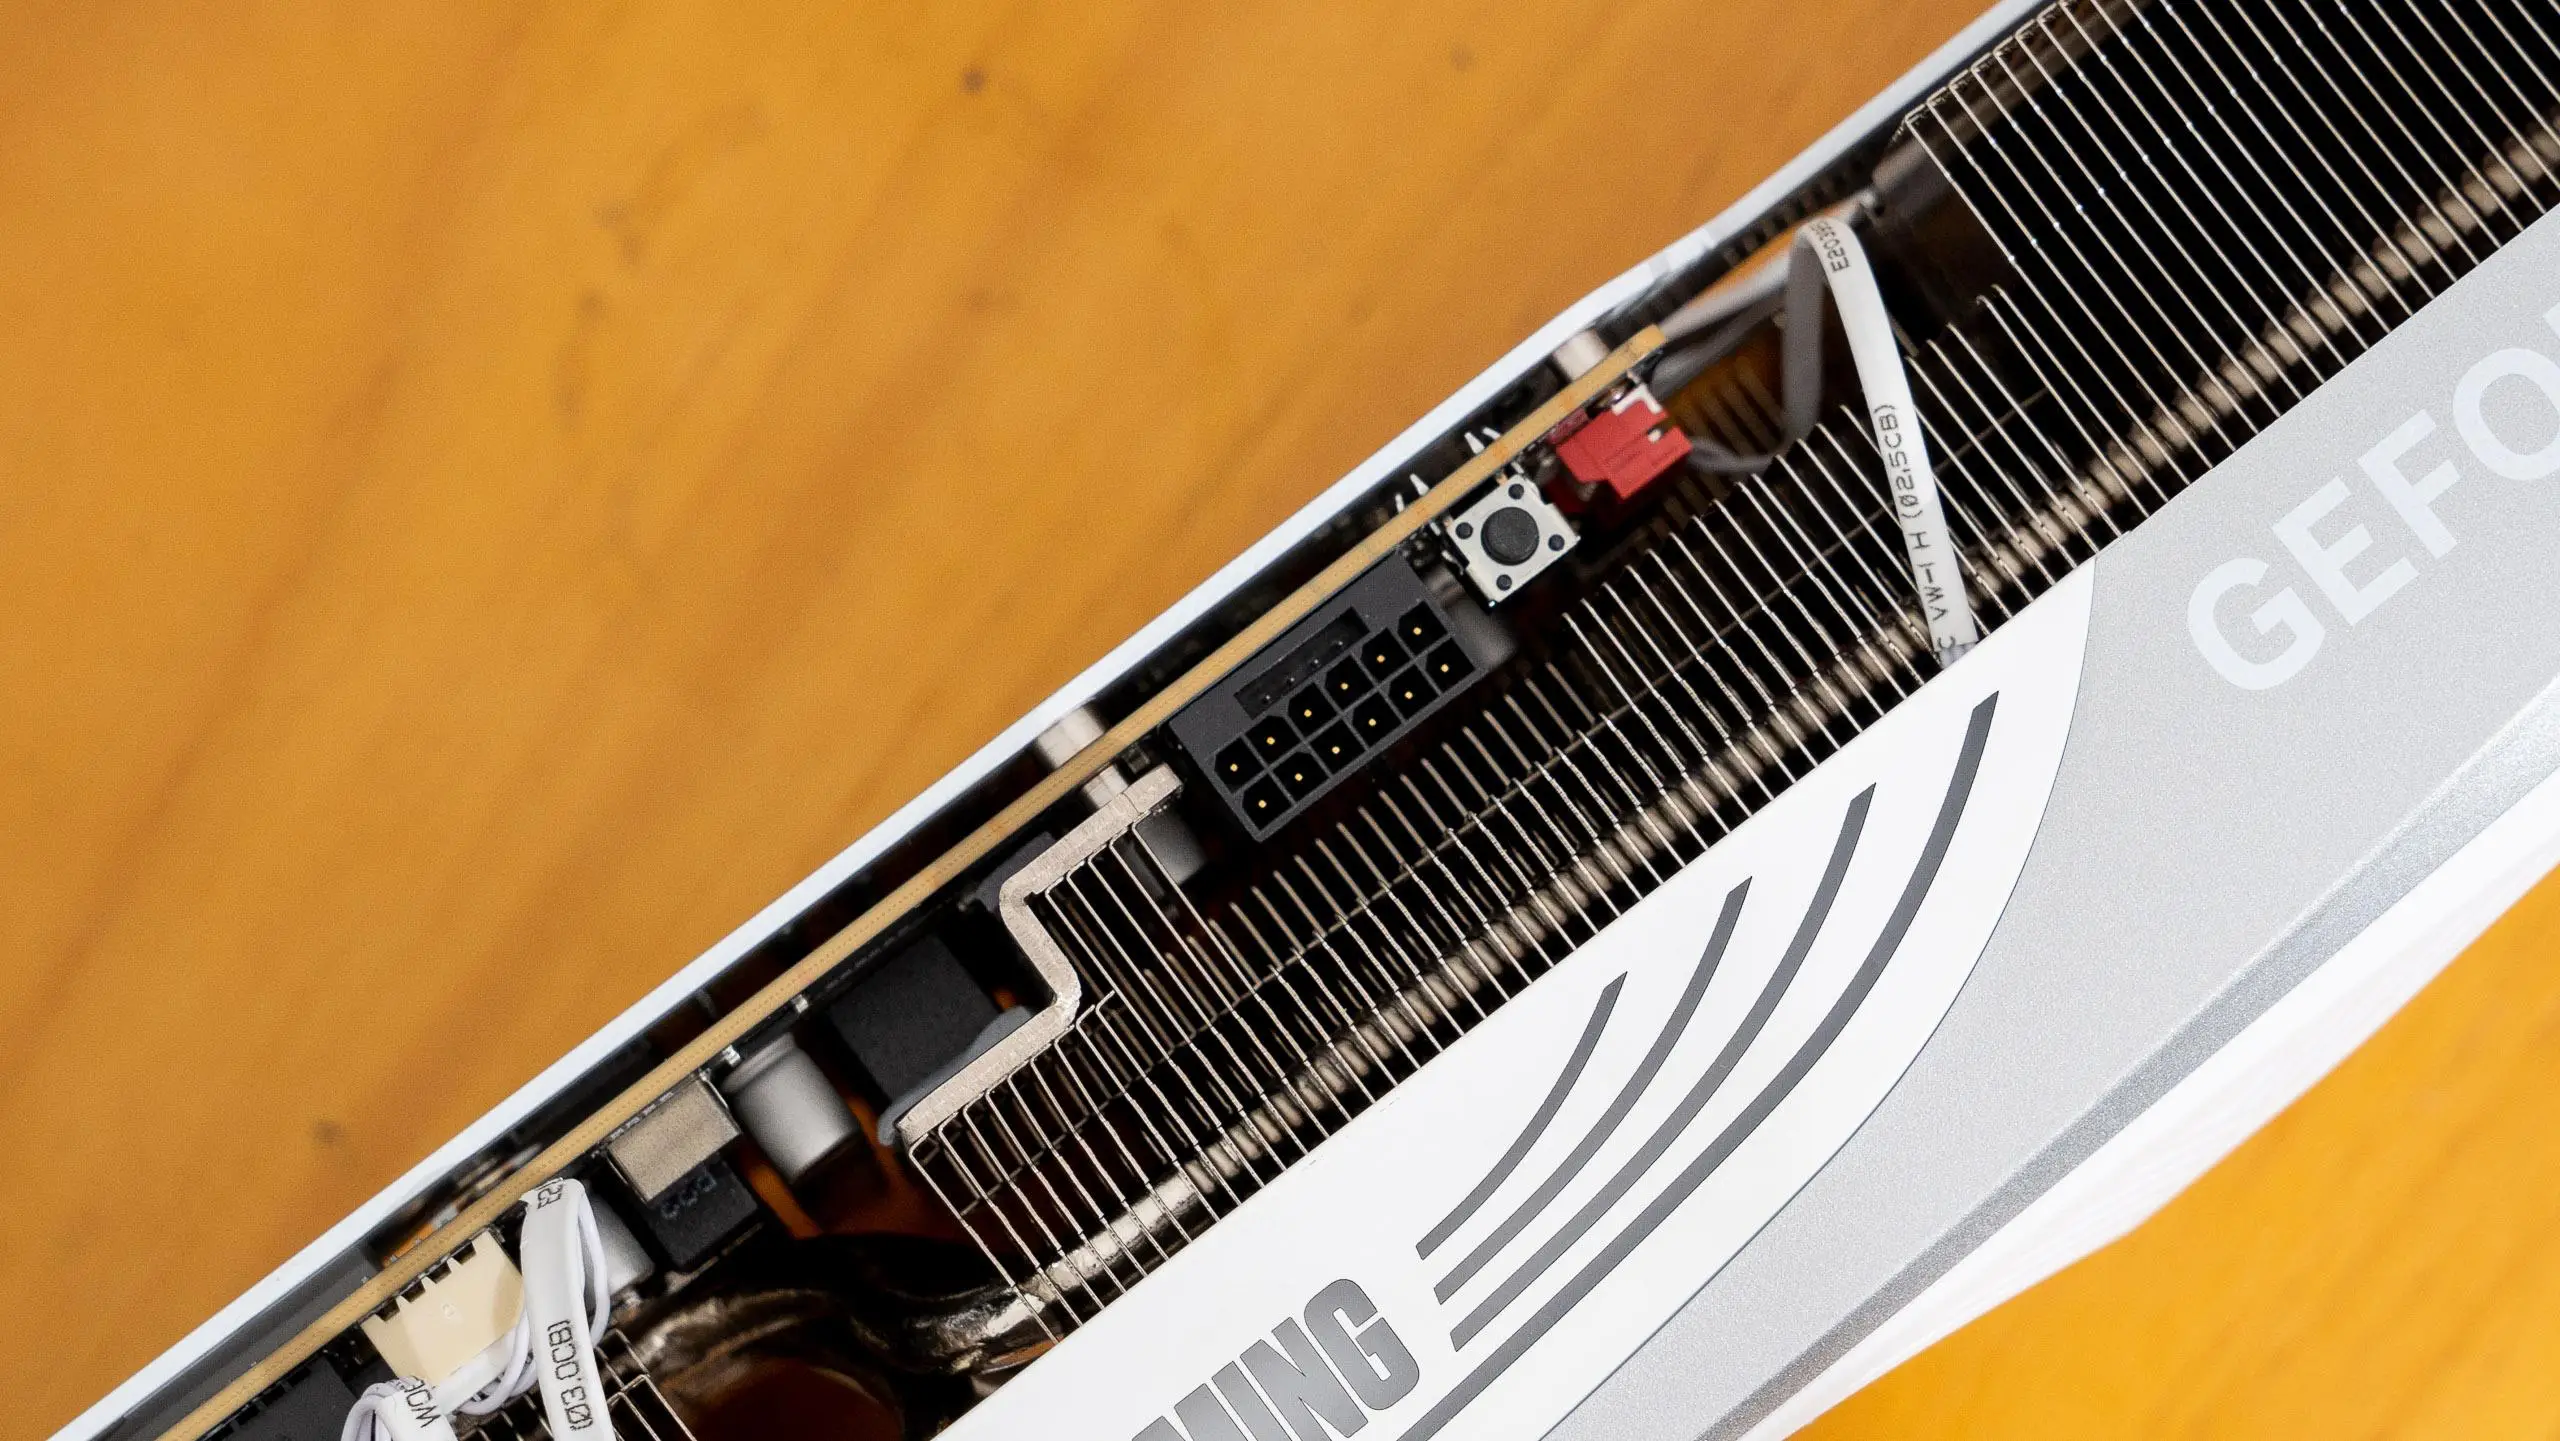 华硕主板 12 代搭载 DDR4 内存，硬件提升与技术探索的升华  第5张